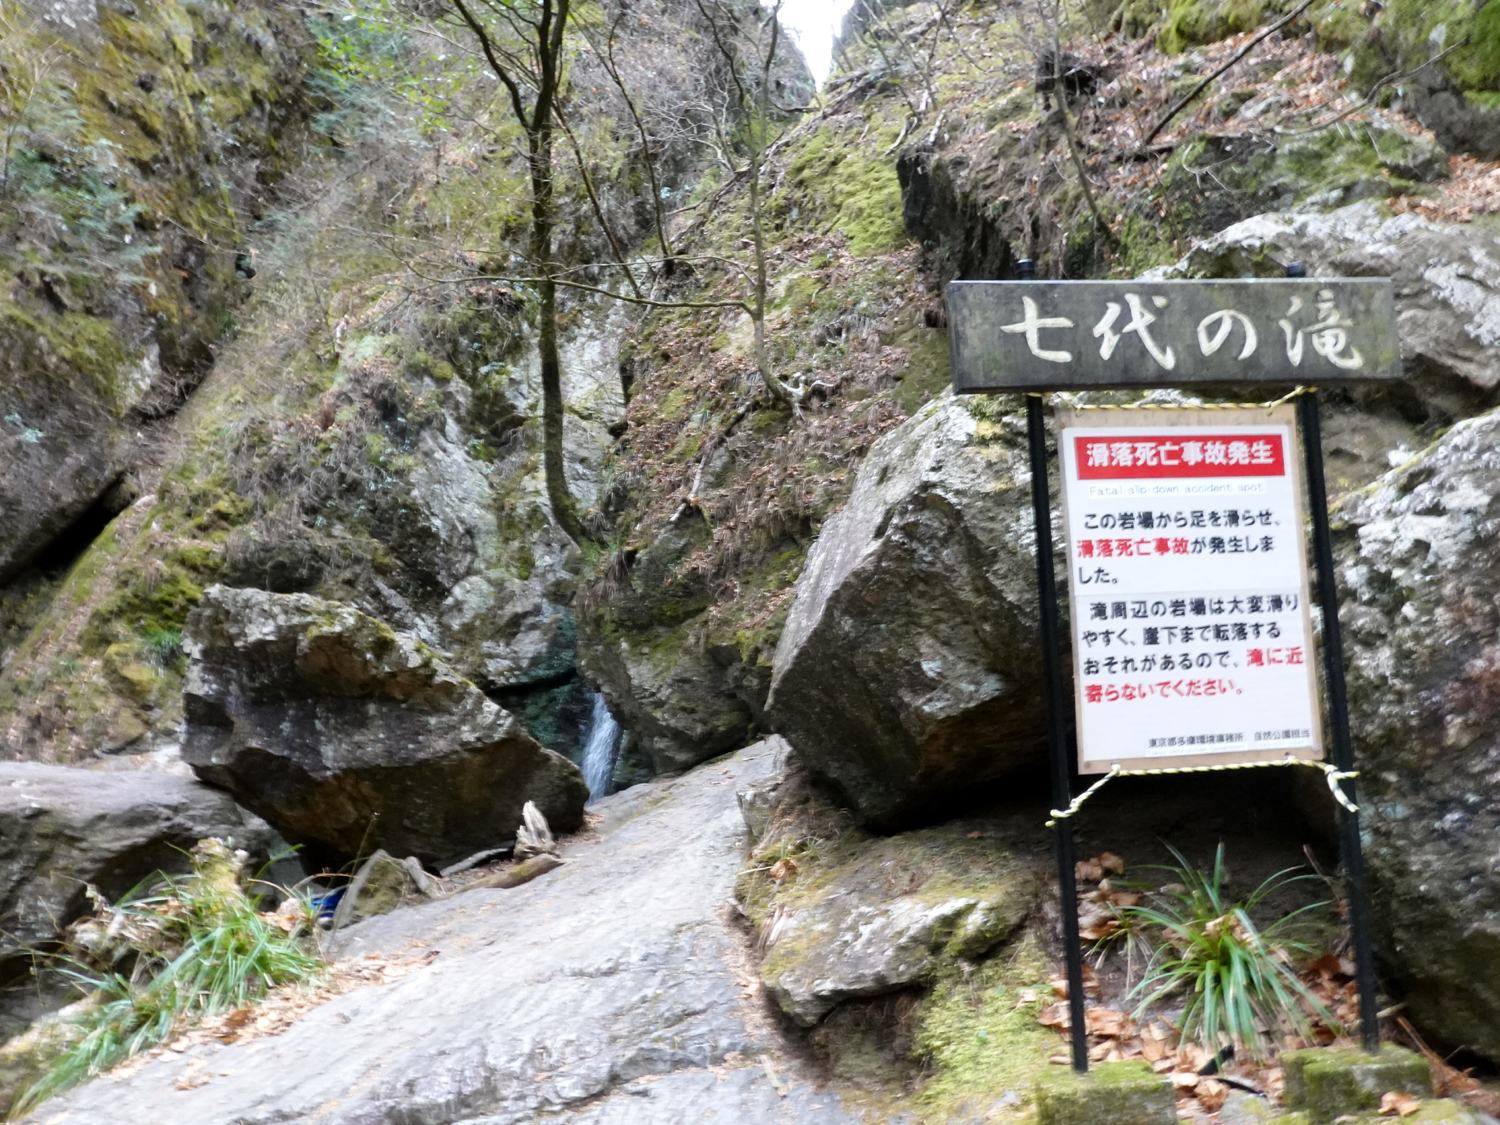 滝の傍にある「滑落死亡事故発生」の看板